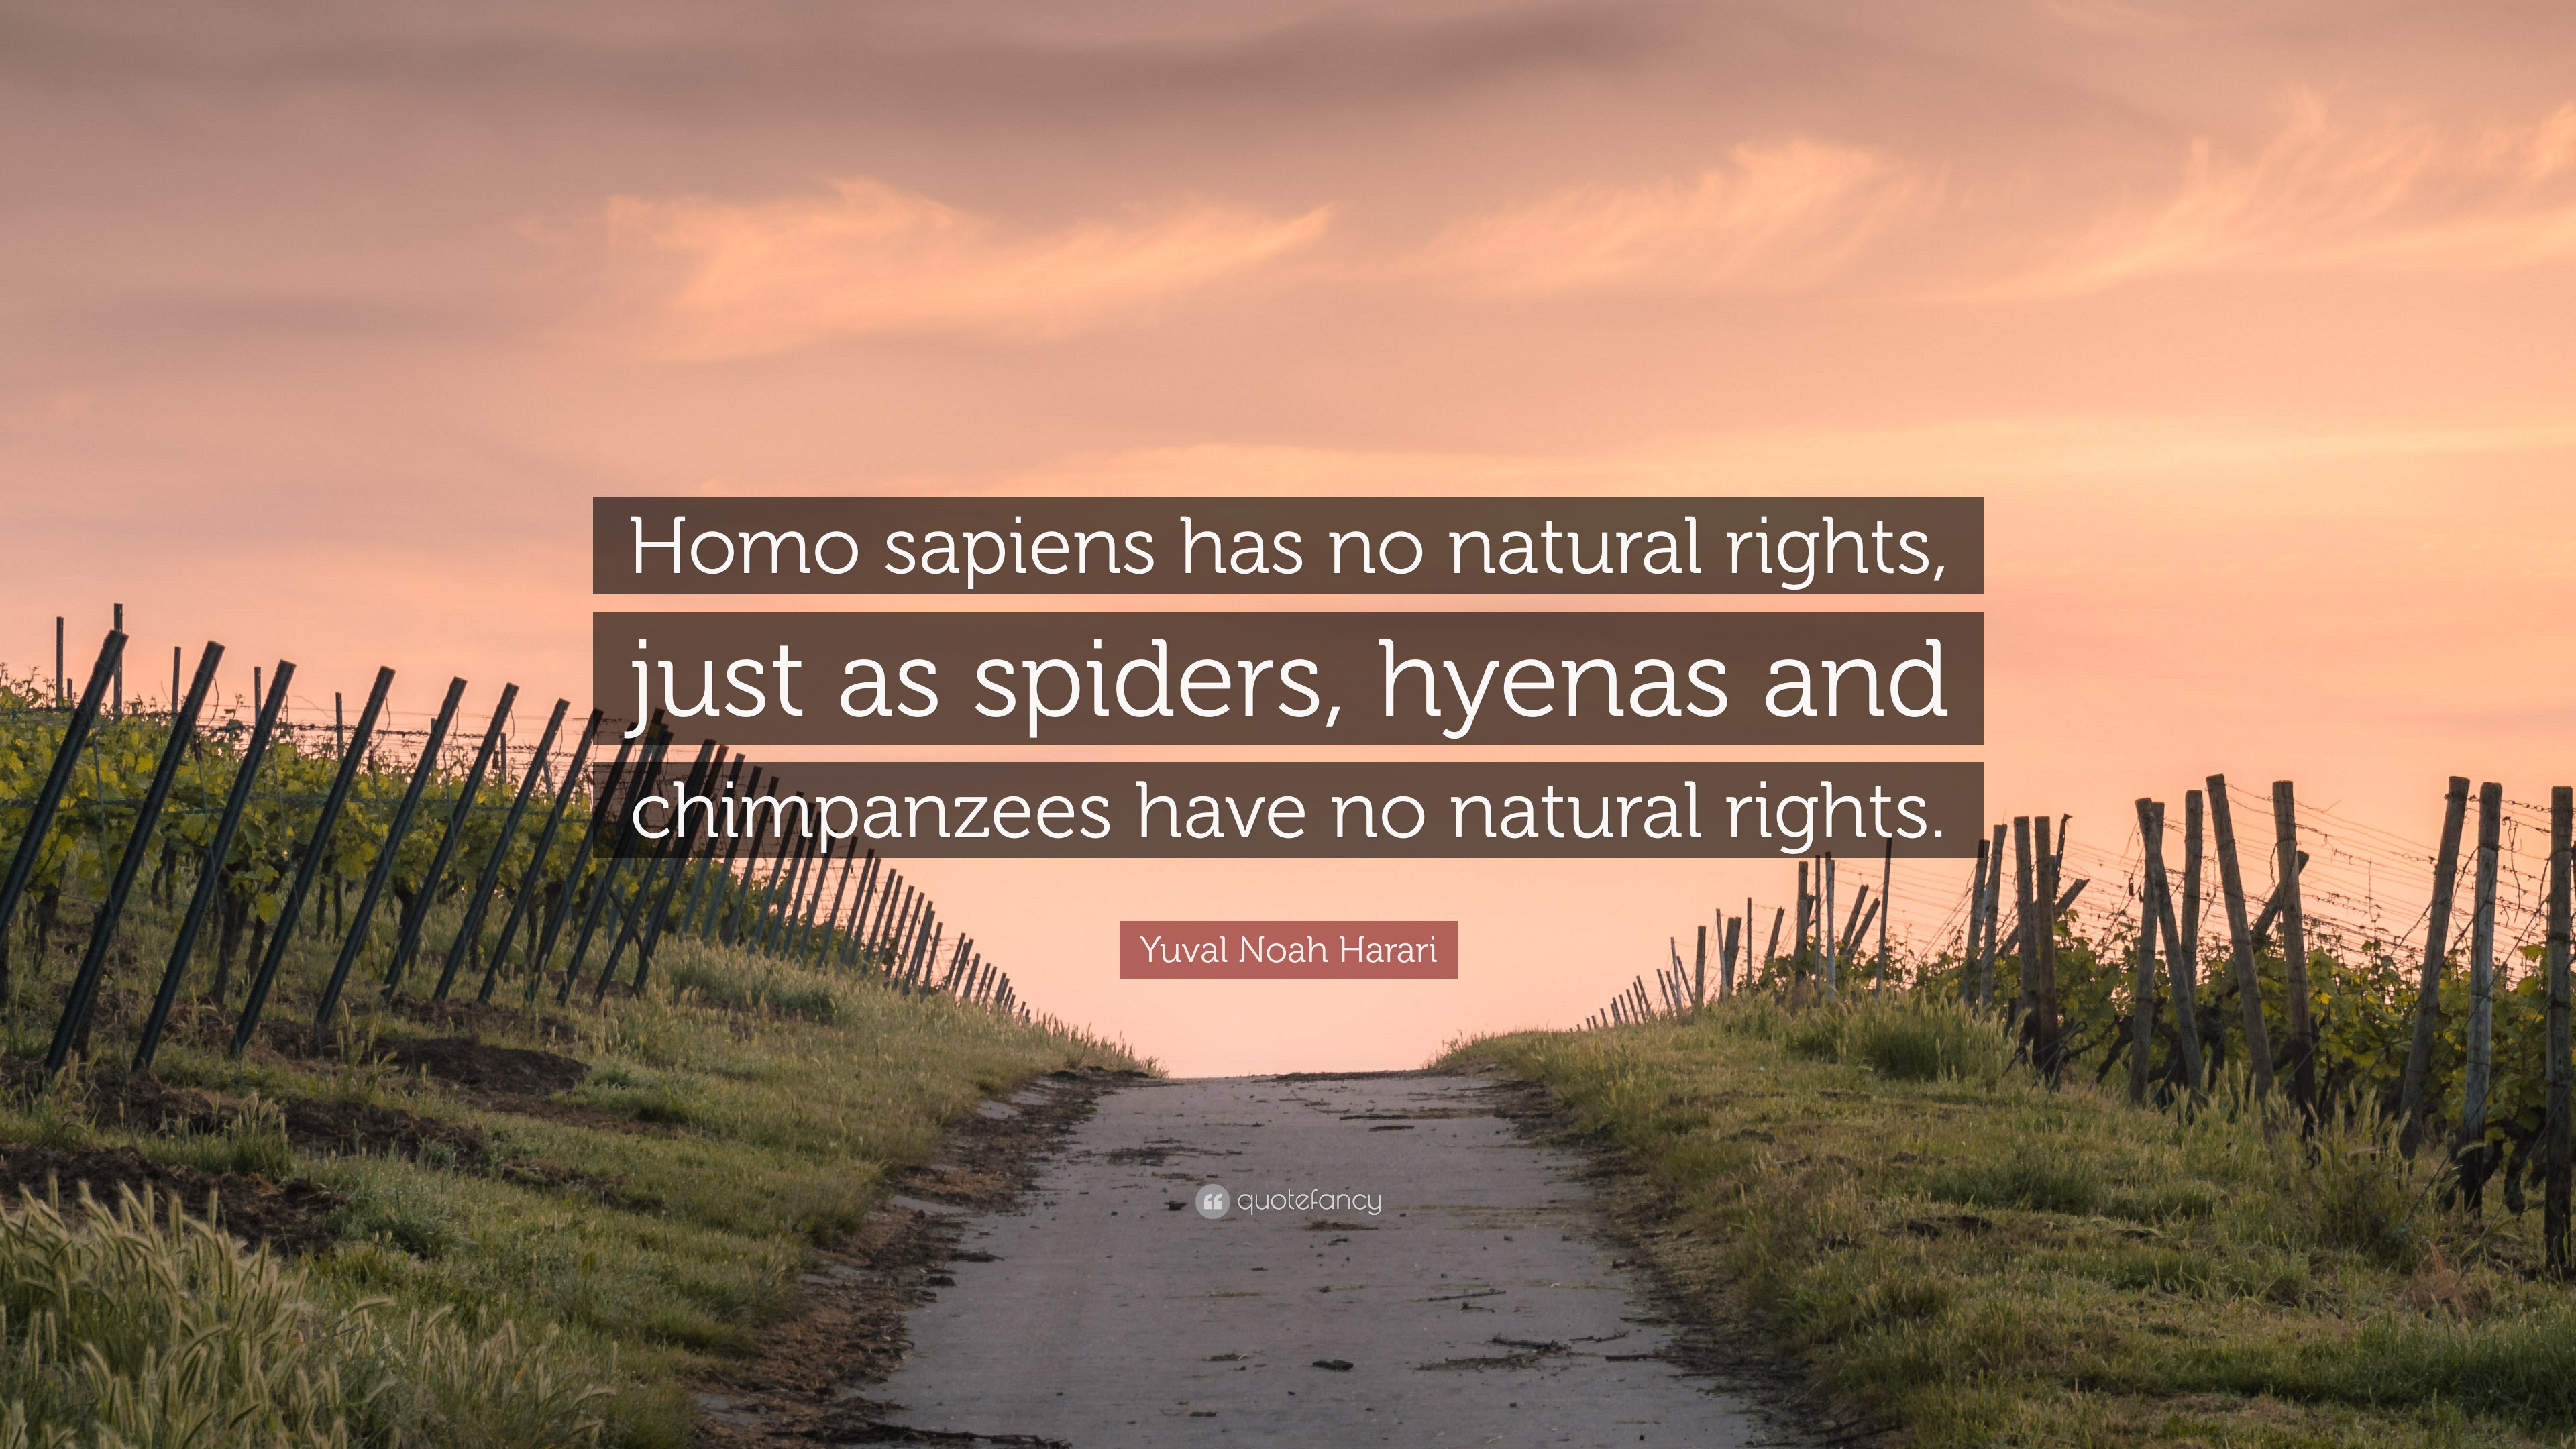 yuval noah harari homo sapiens